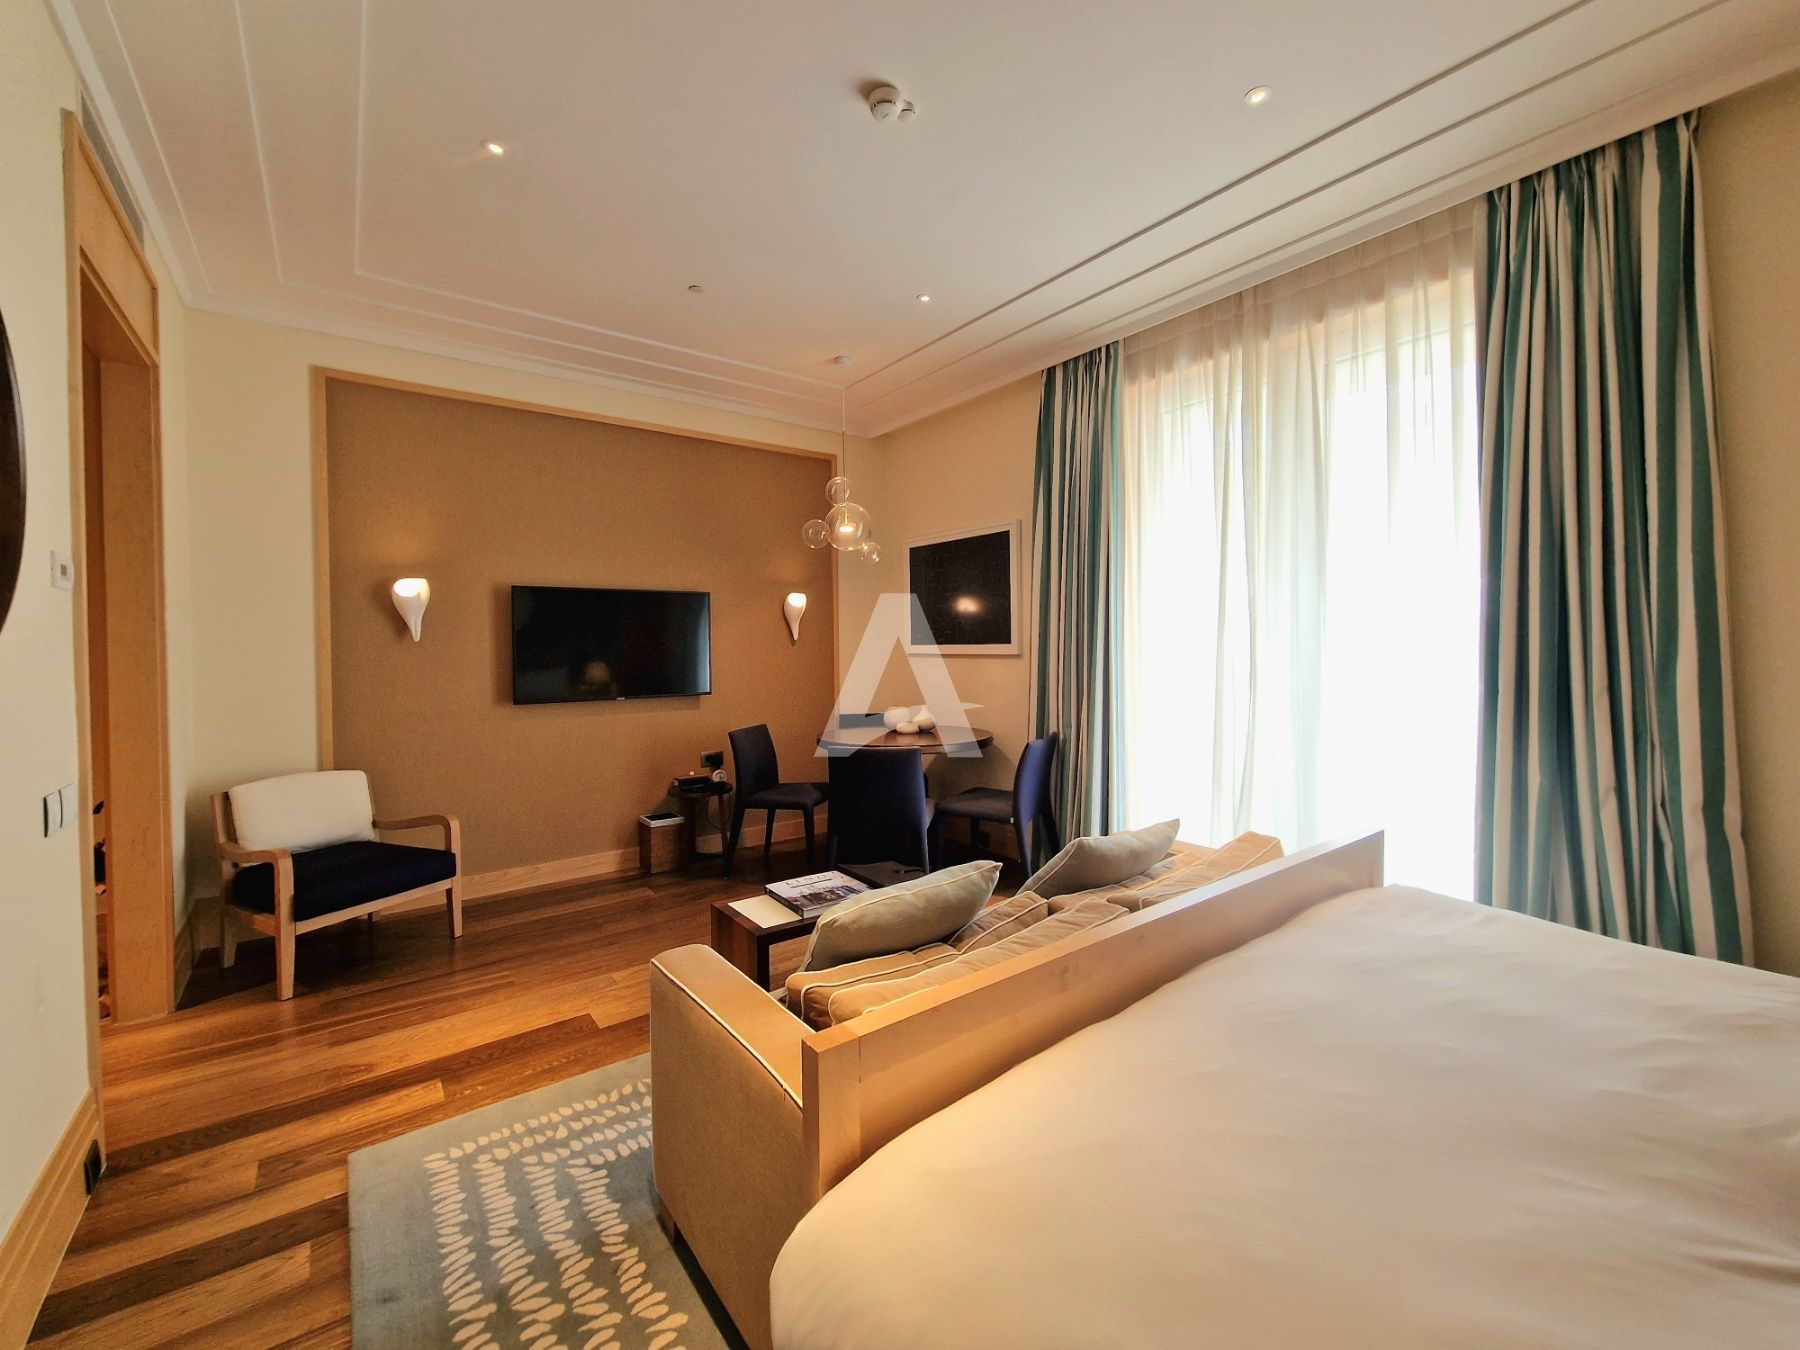 amforaproperty.com/Prodaje se luksuzan apartman površine 42m² smešten u hotelu Regent ,Porto Montenegro.